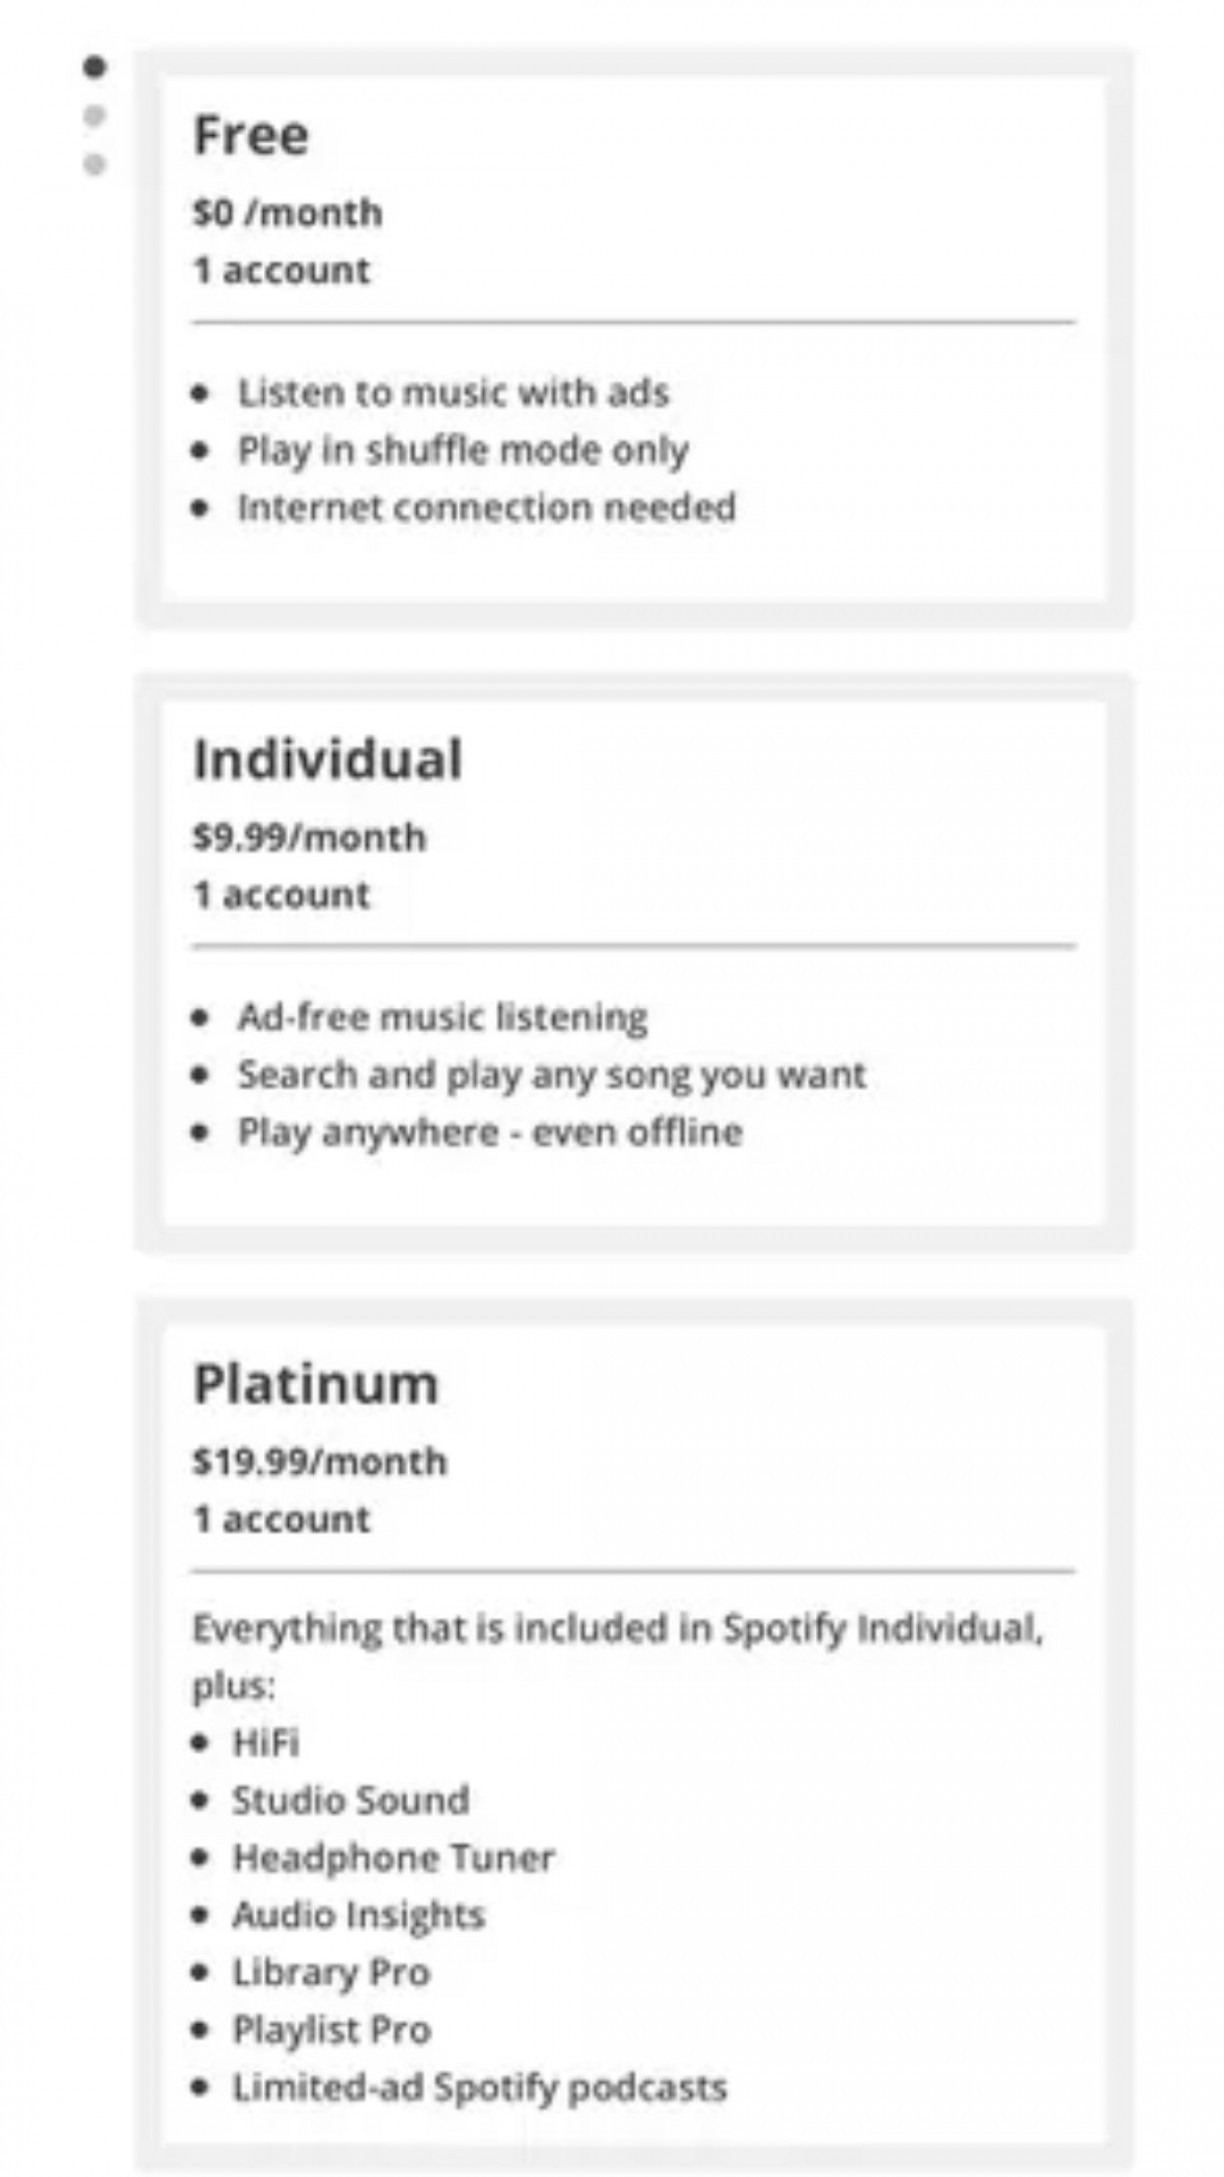 Spotify com HiFi será realidade em novo plano Premium? Confira